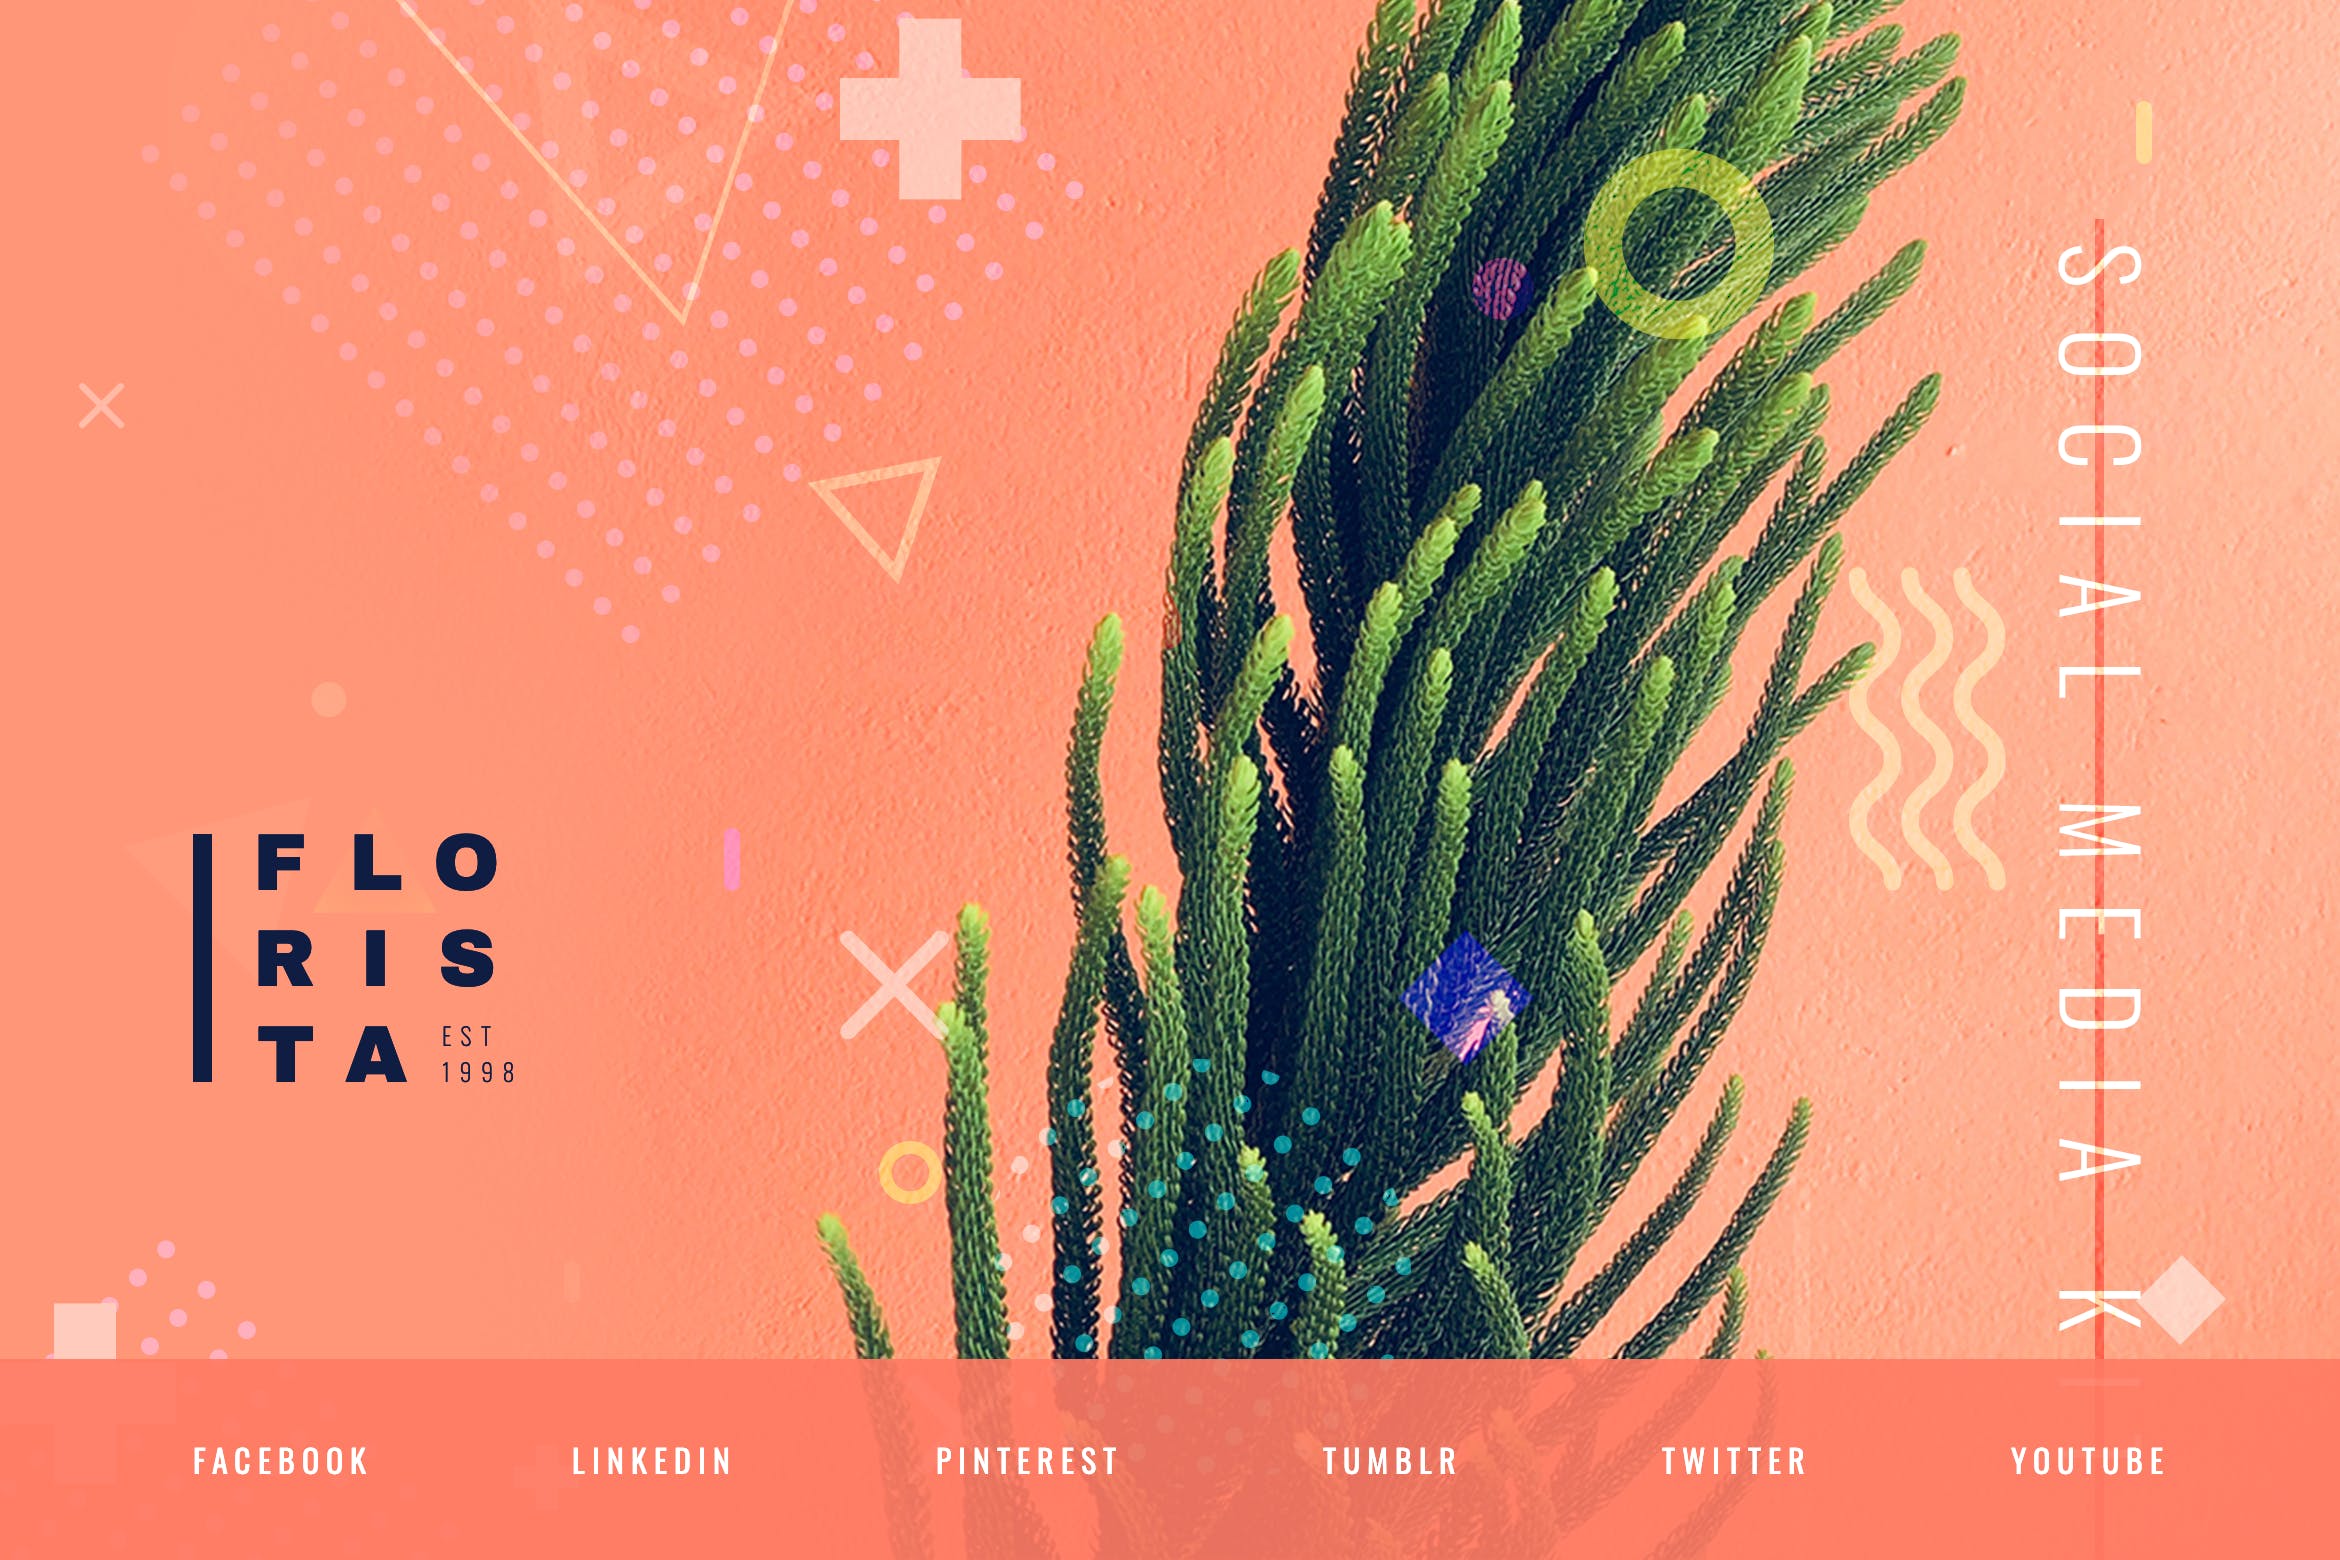 花卉设计风格社交媒体设计素材包 Floral Design Studio – Social Media Kit插图